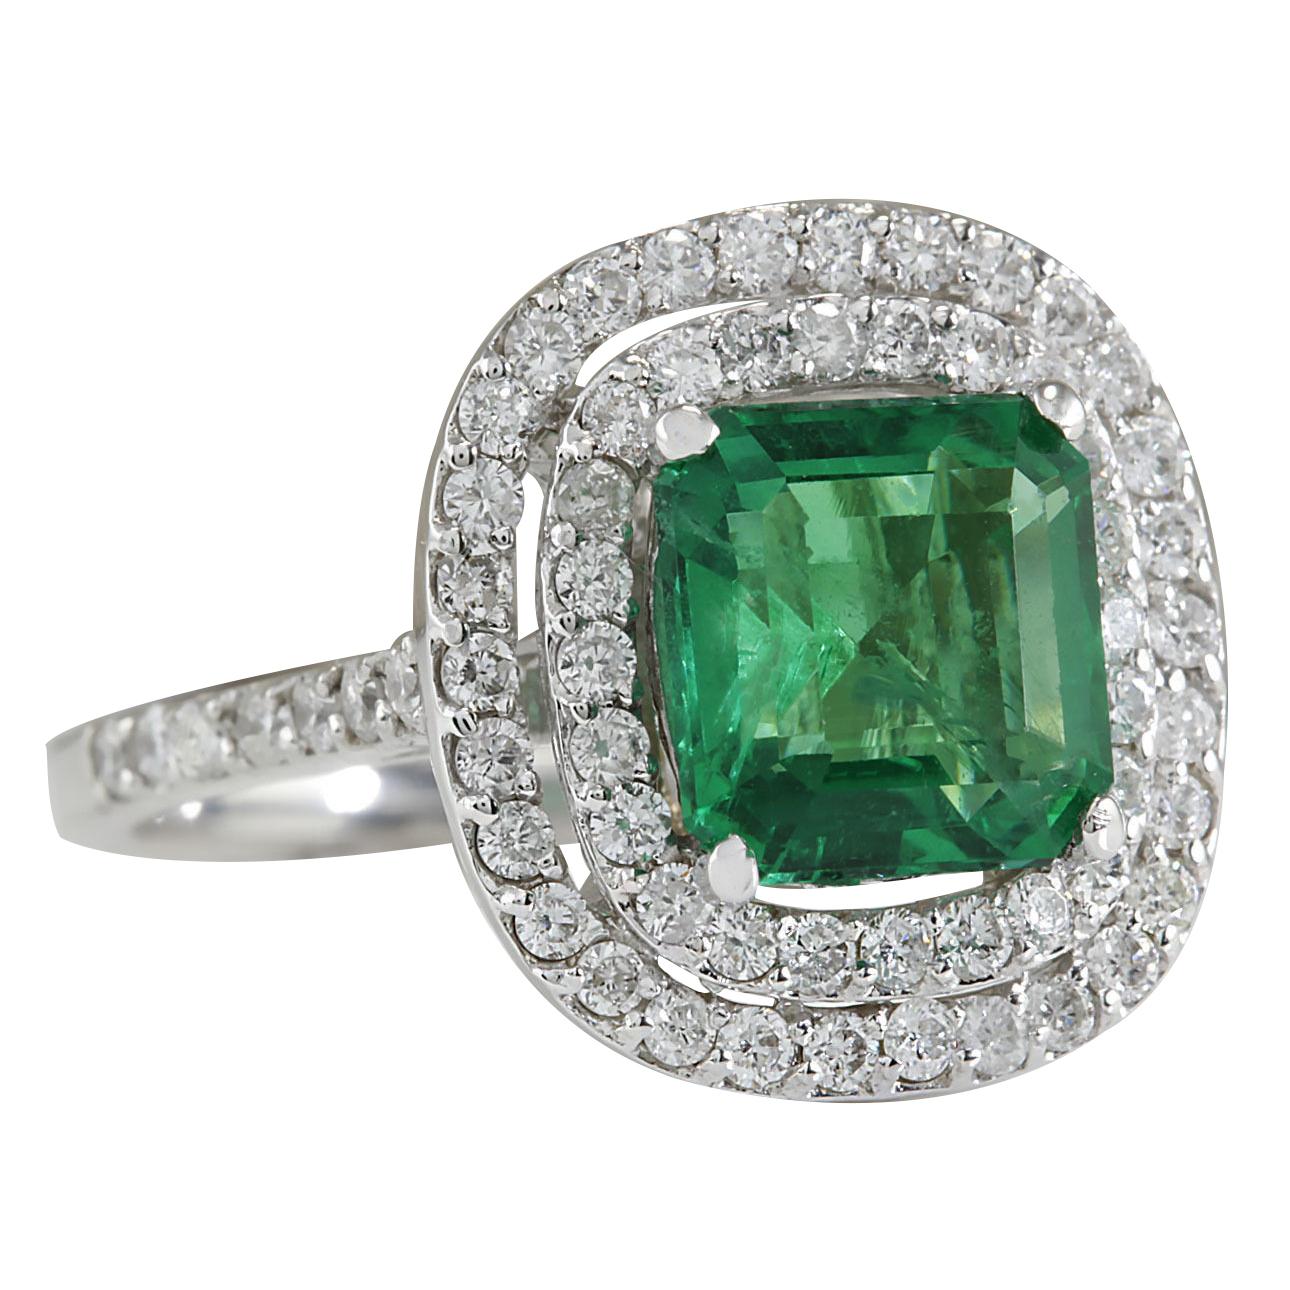 3.62 Carat Natural Emerald 14 Karat White Gold Diamond Ring
Stamped: 14K White Gold
Total Ring Weight: 5.2 Grams
Total Natural Emerald Weight is 2.62 Carat (Measures: 8.50x8.50 mm)
Color: Green
Total Natural Diamond Weight is 1.00 Carat
Color: F-G,